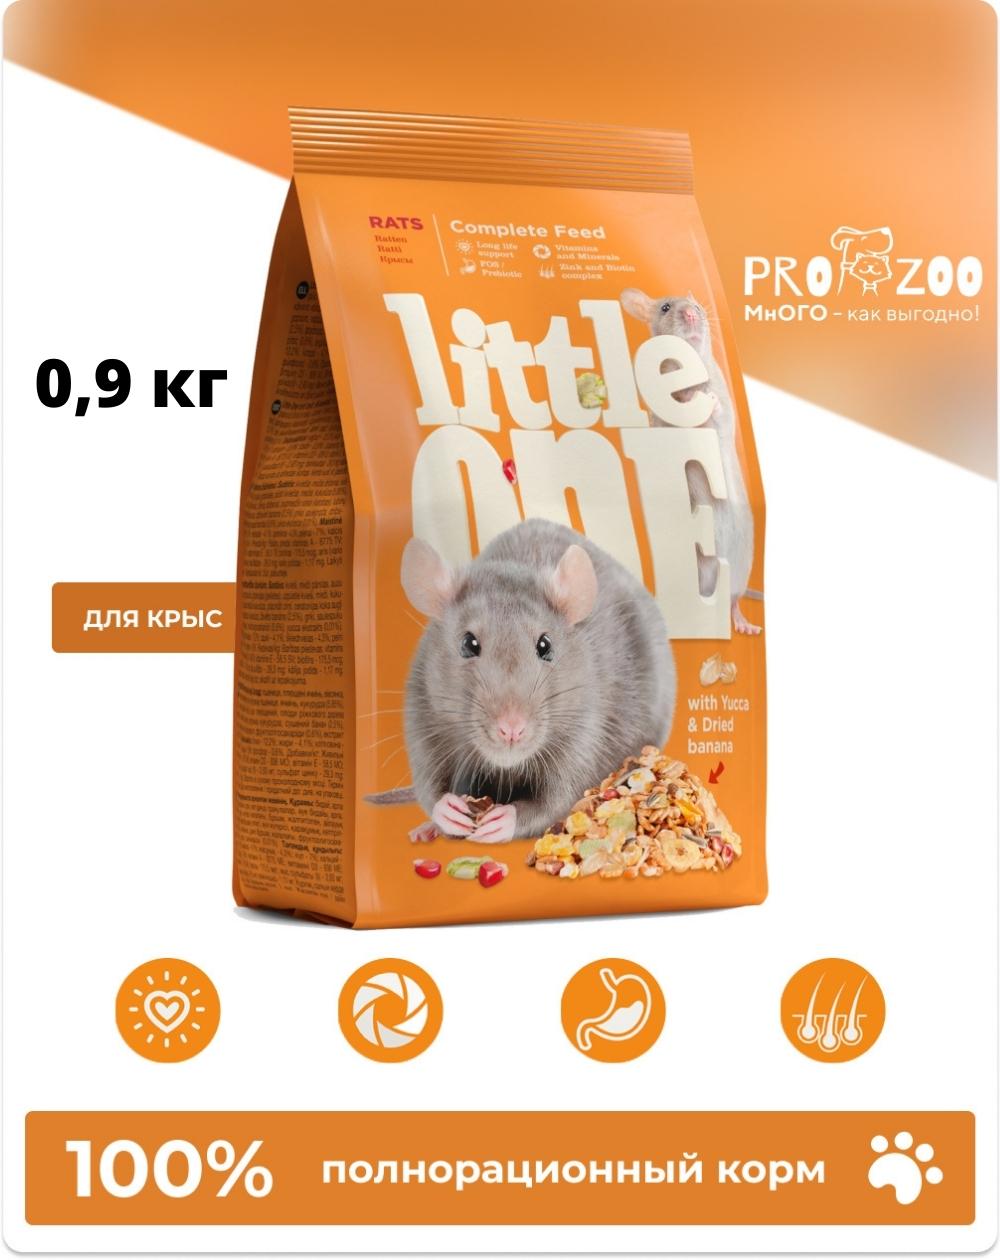 предпросмотр Корм Little One для крыс, 0,9 кг 1